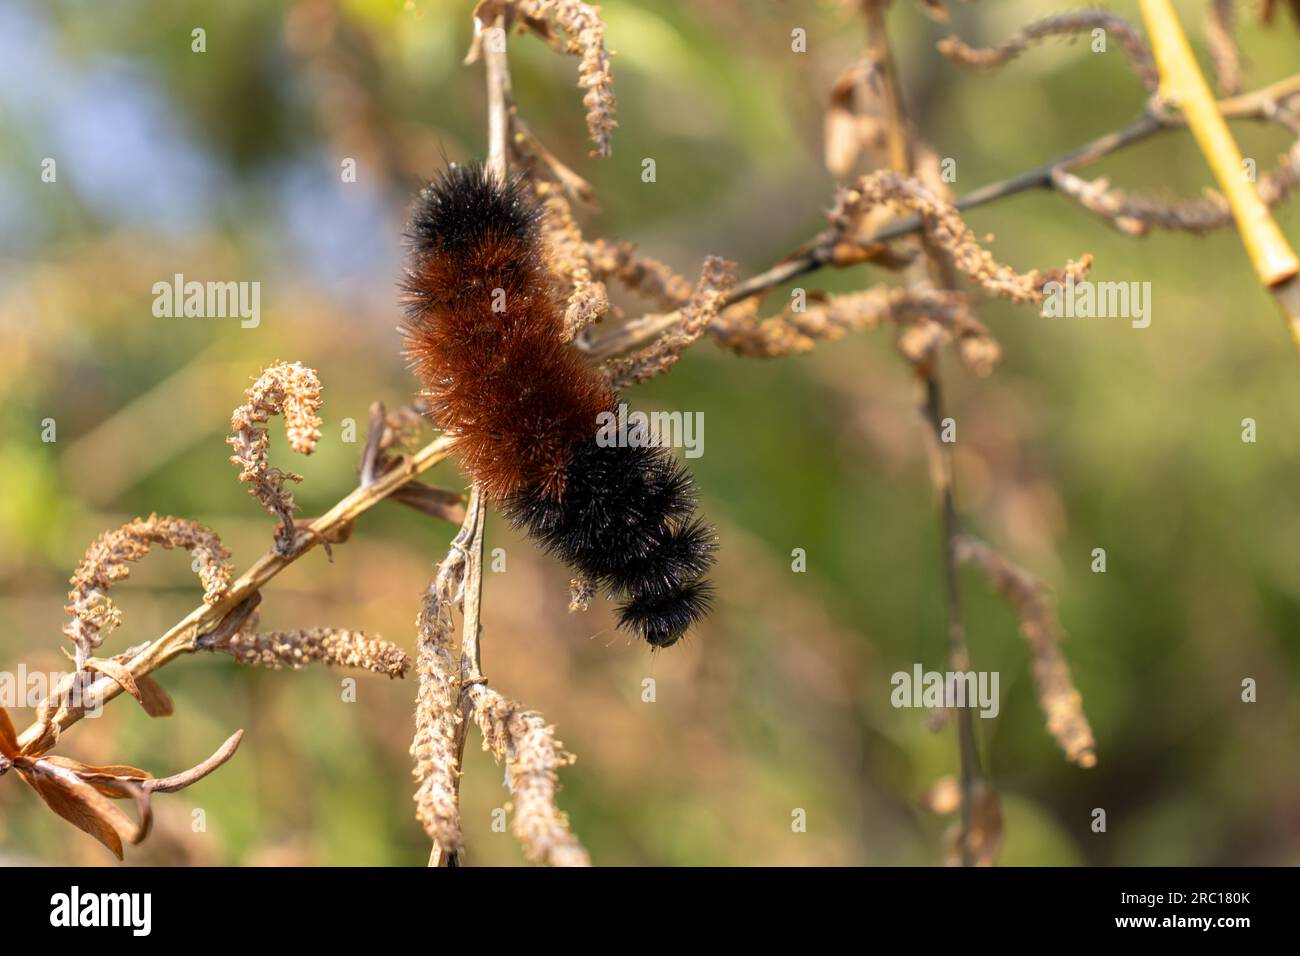 Arancio nero orso legnoso caterpillar strisciante sul ramo dell'albero - foglie verdi sfondo sfocato. Preso a Toronto, in Canada. Foto Stock